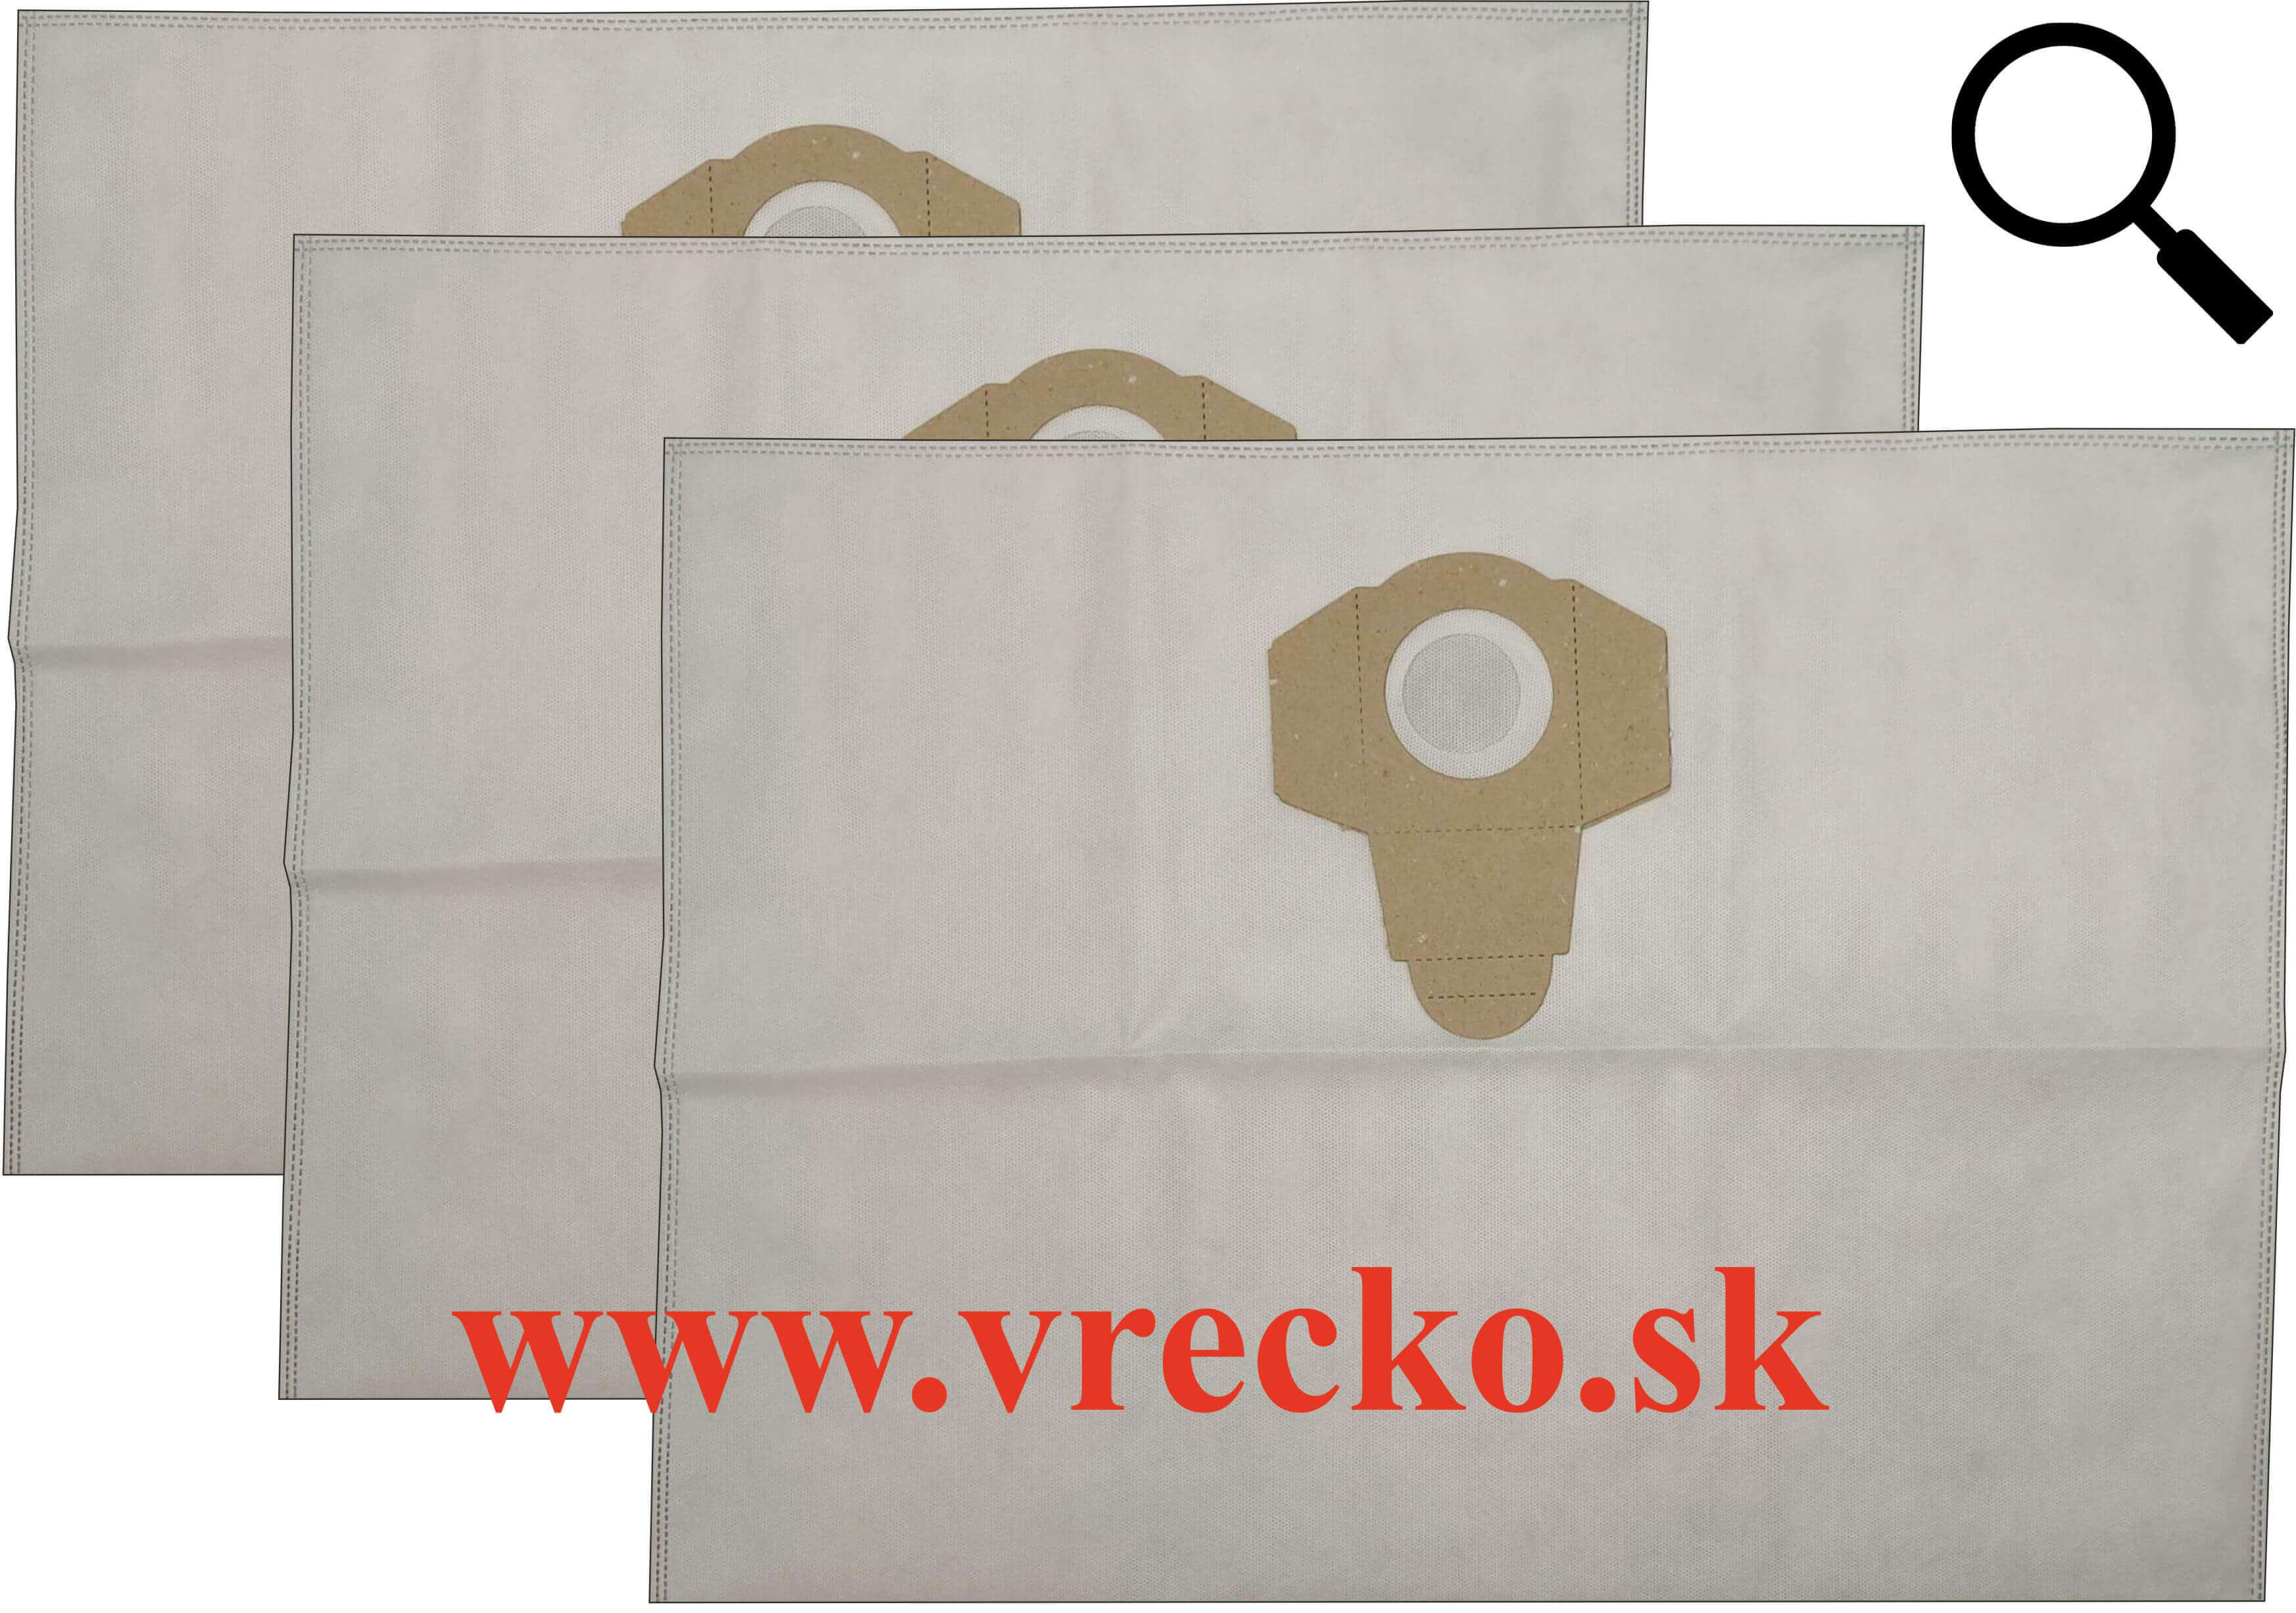 Shop Vac K12-SQ14 hoby textilné vrecká do vysávača, 3ks